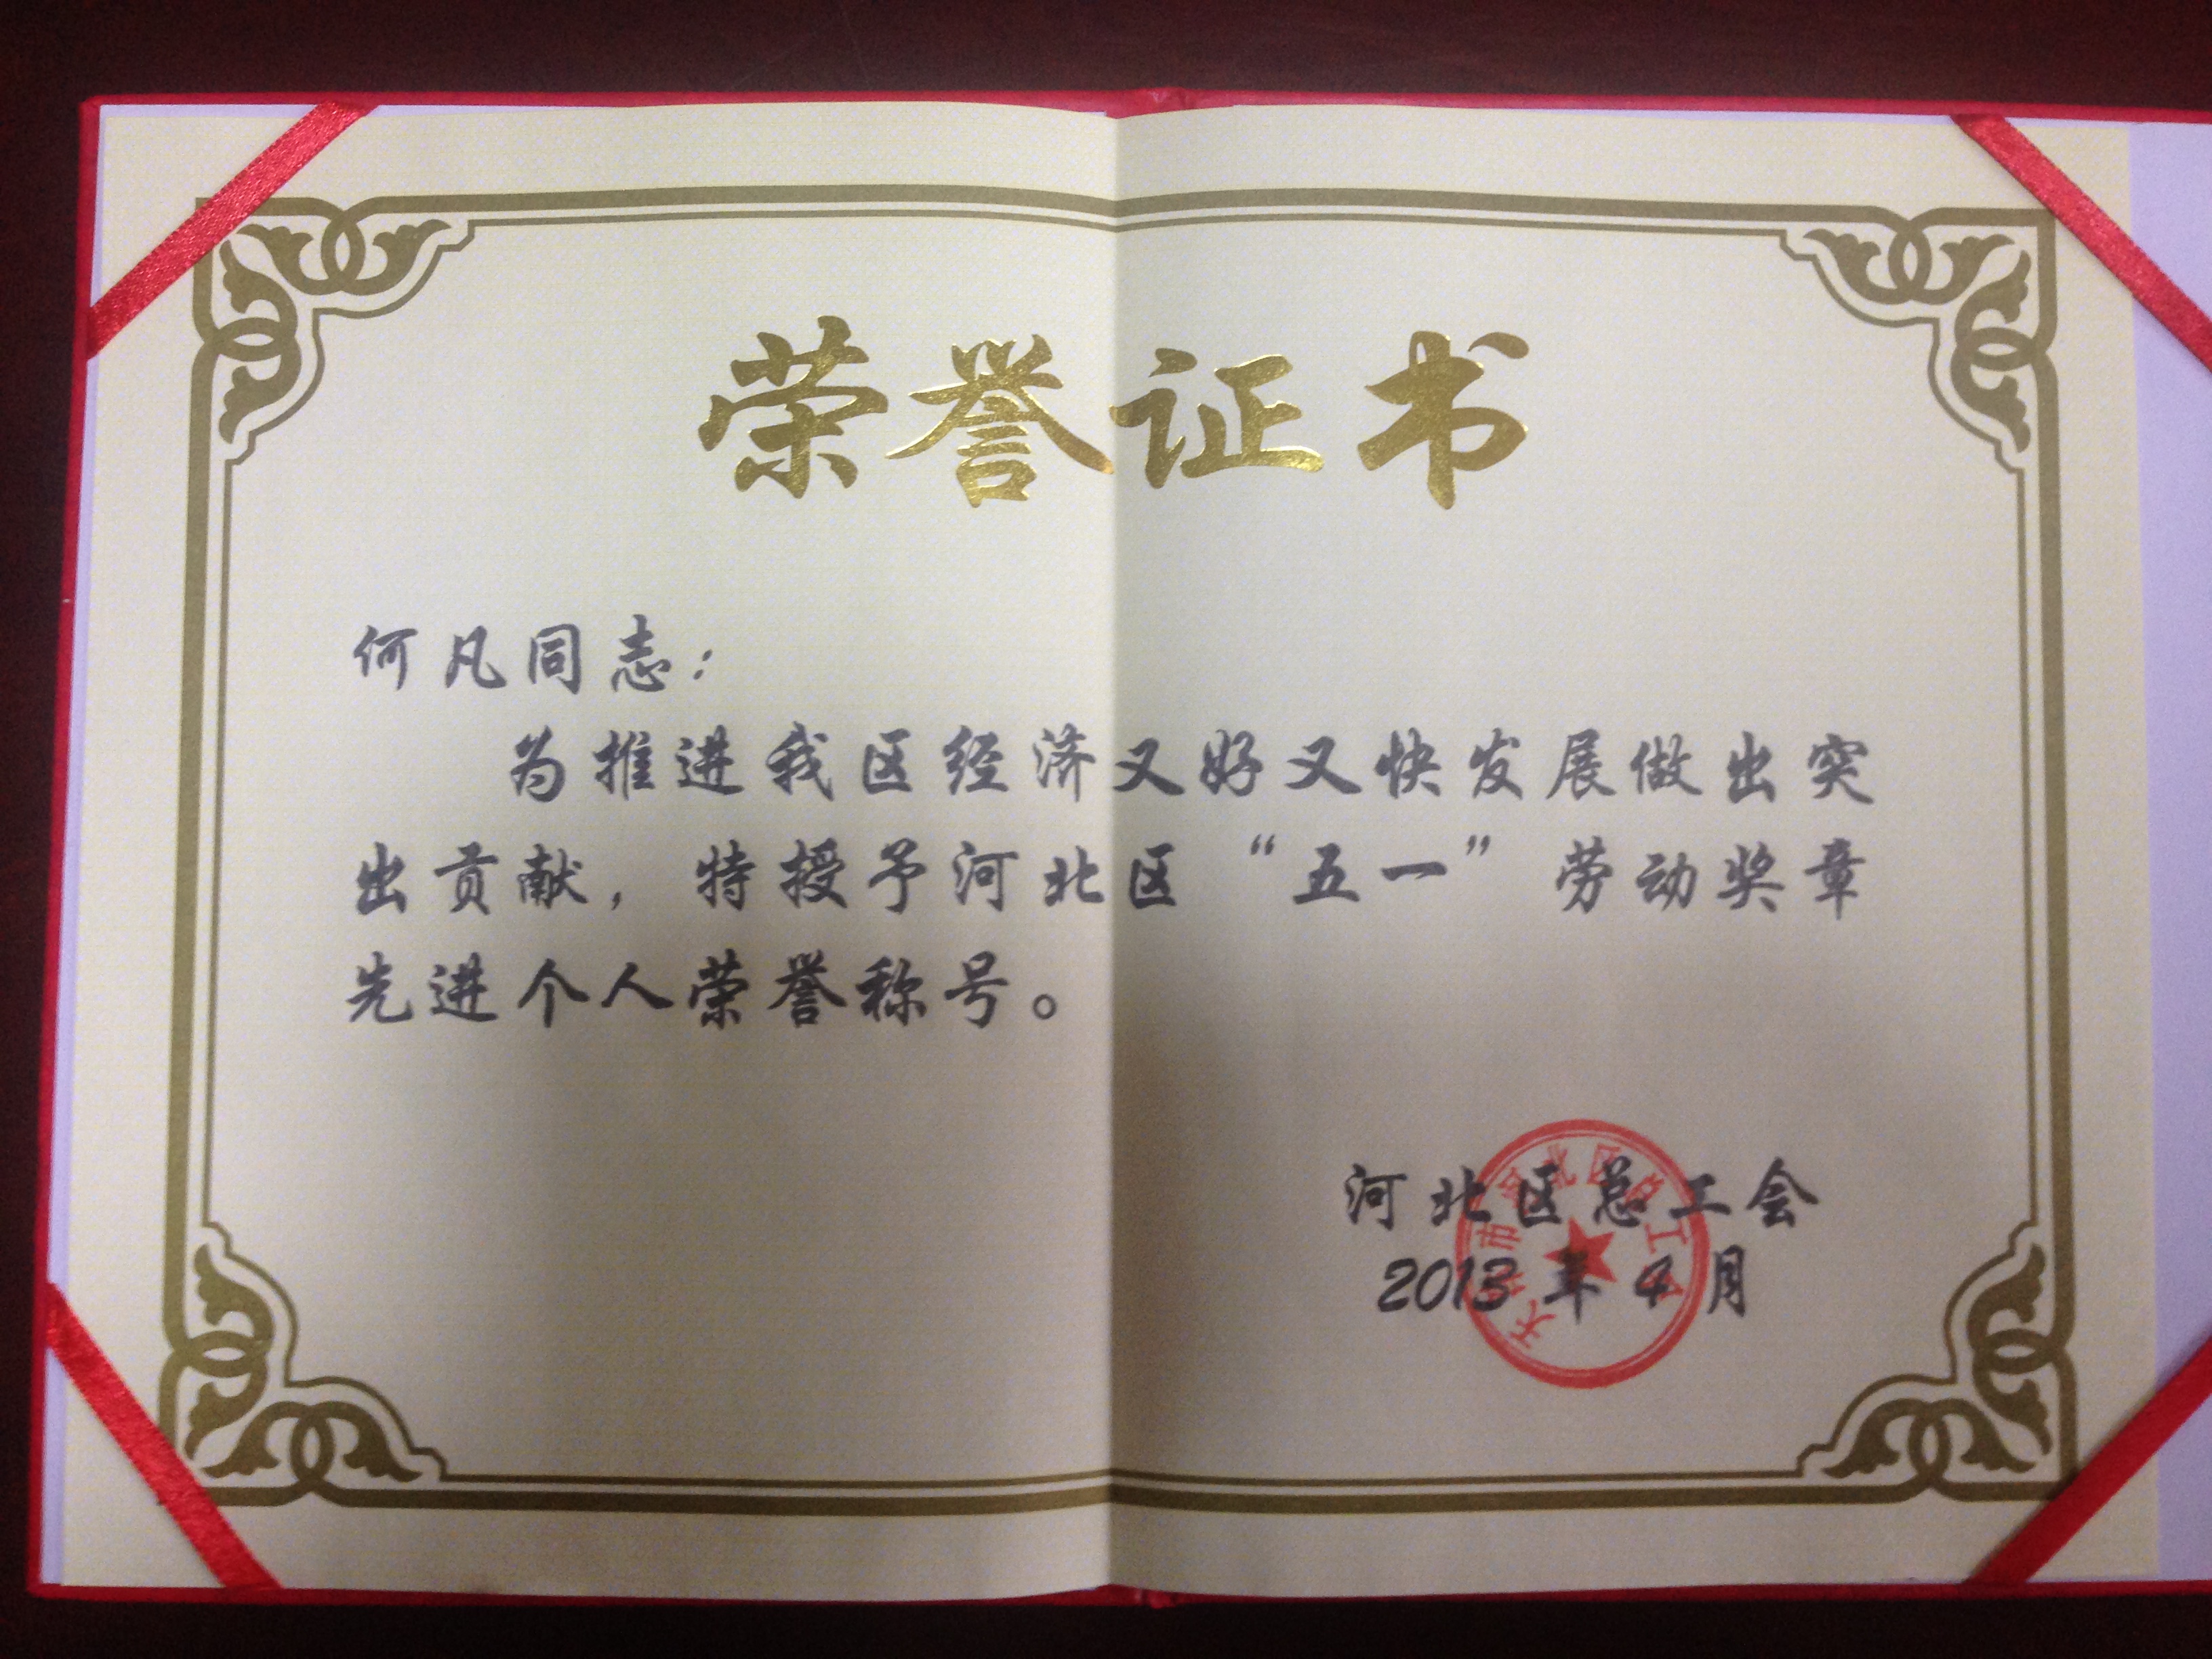 天津班车租赁公司及法人荣誉证书(图19)